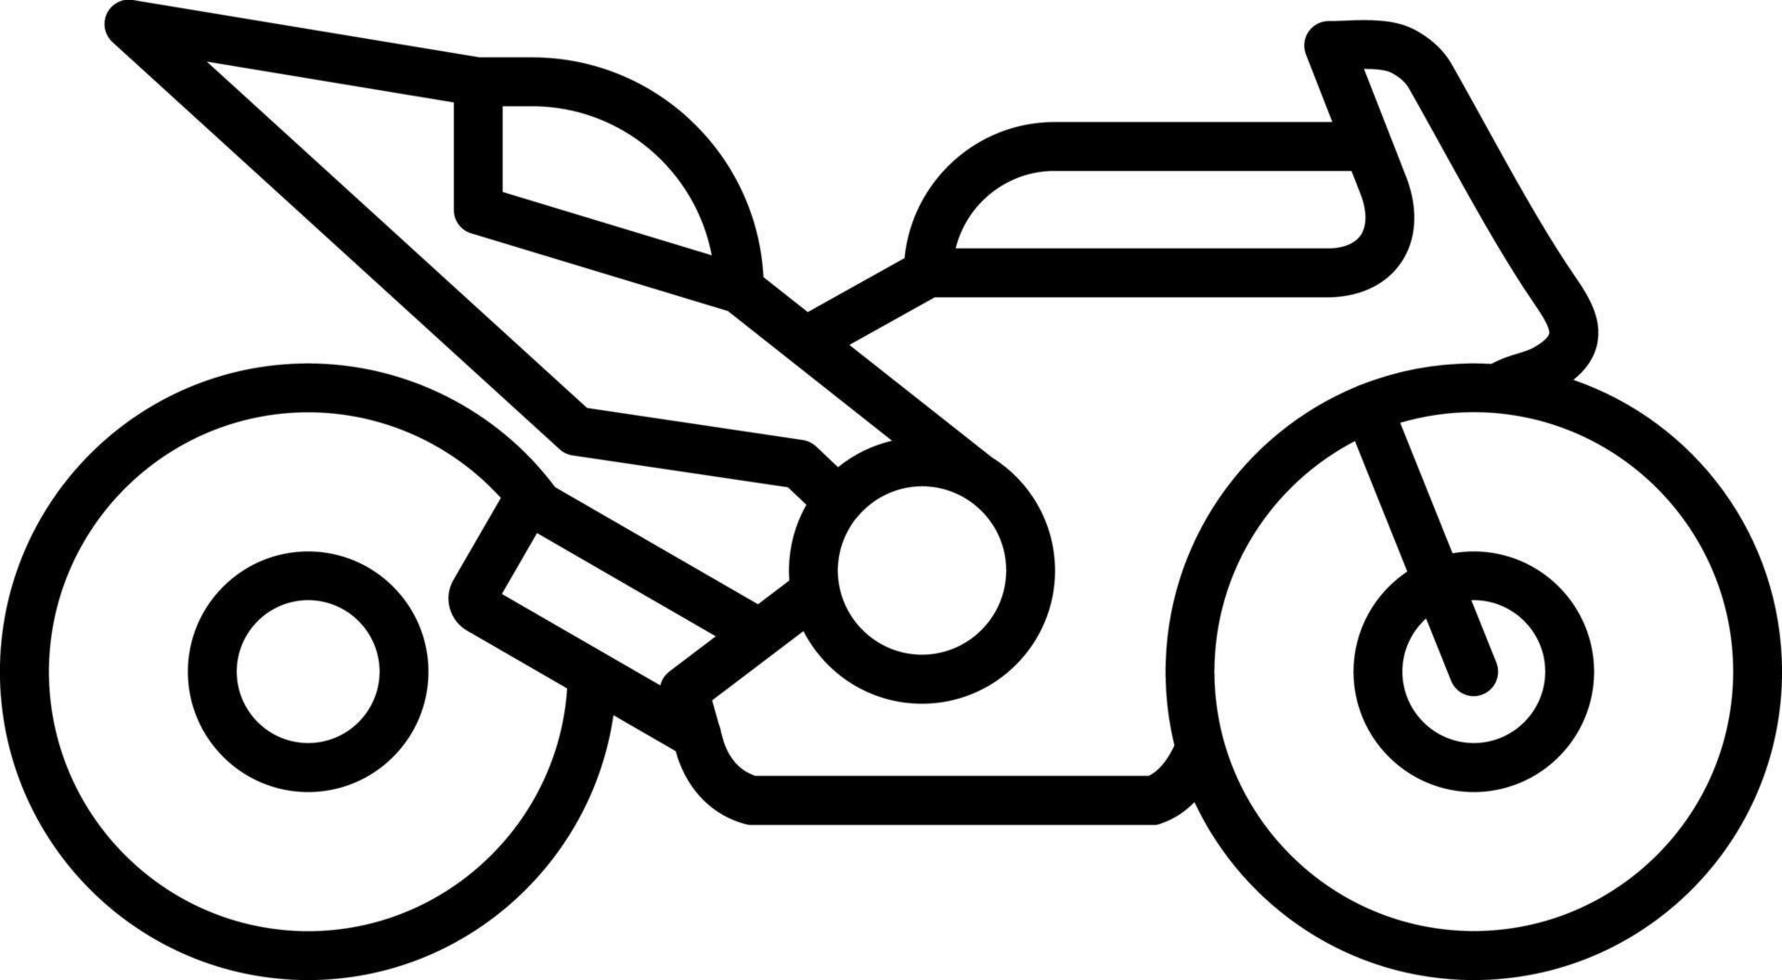 ras fiets vector icoon ontwerp